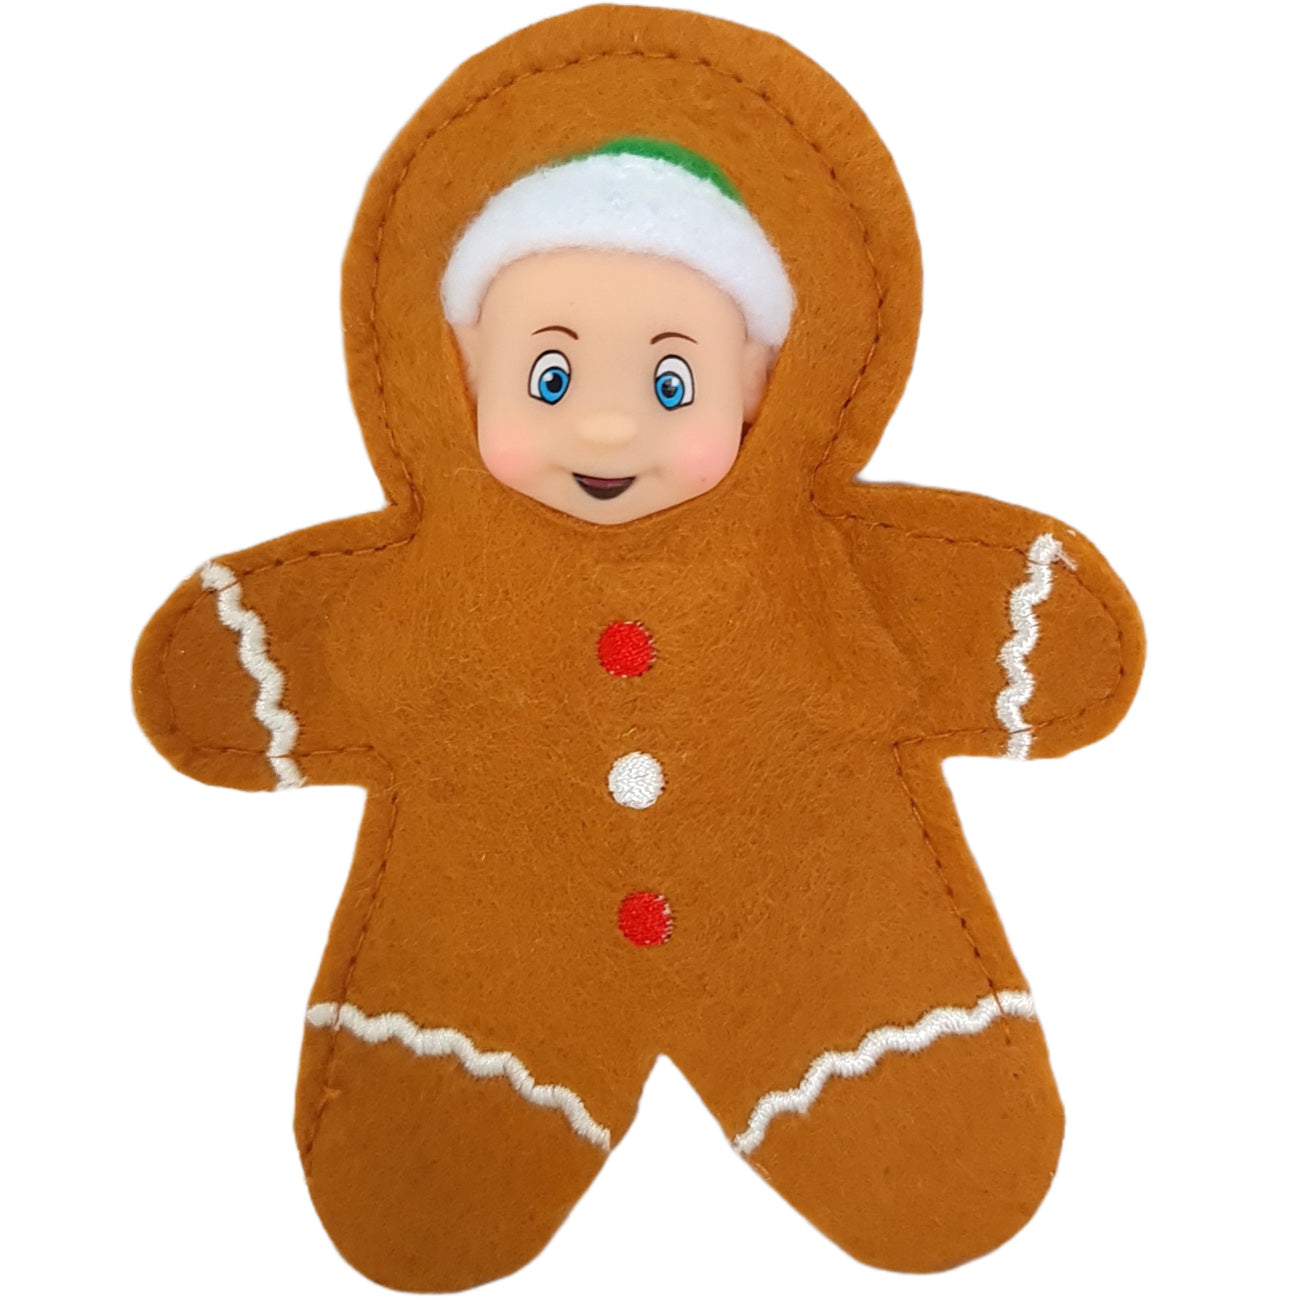 Gingerbread elf baby costume